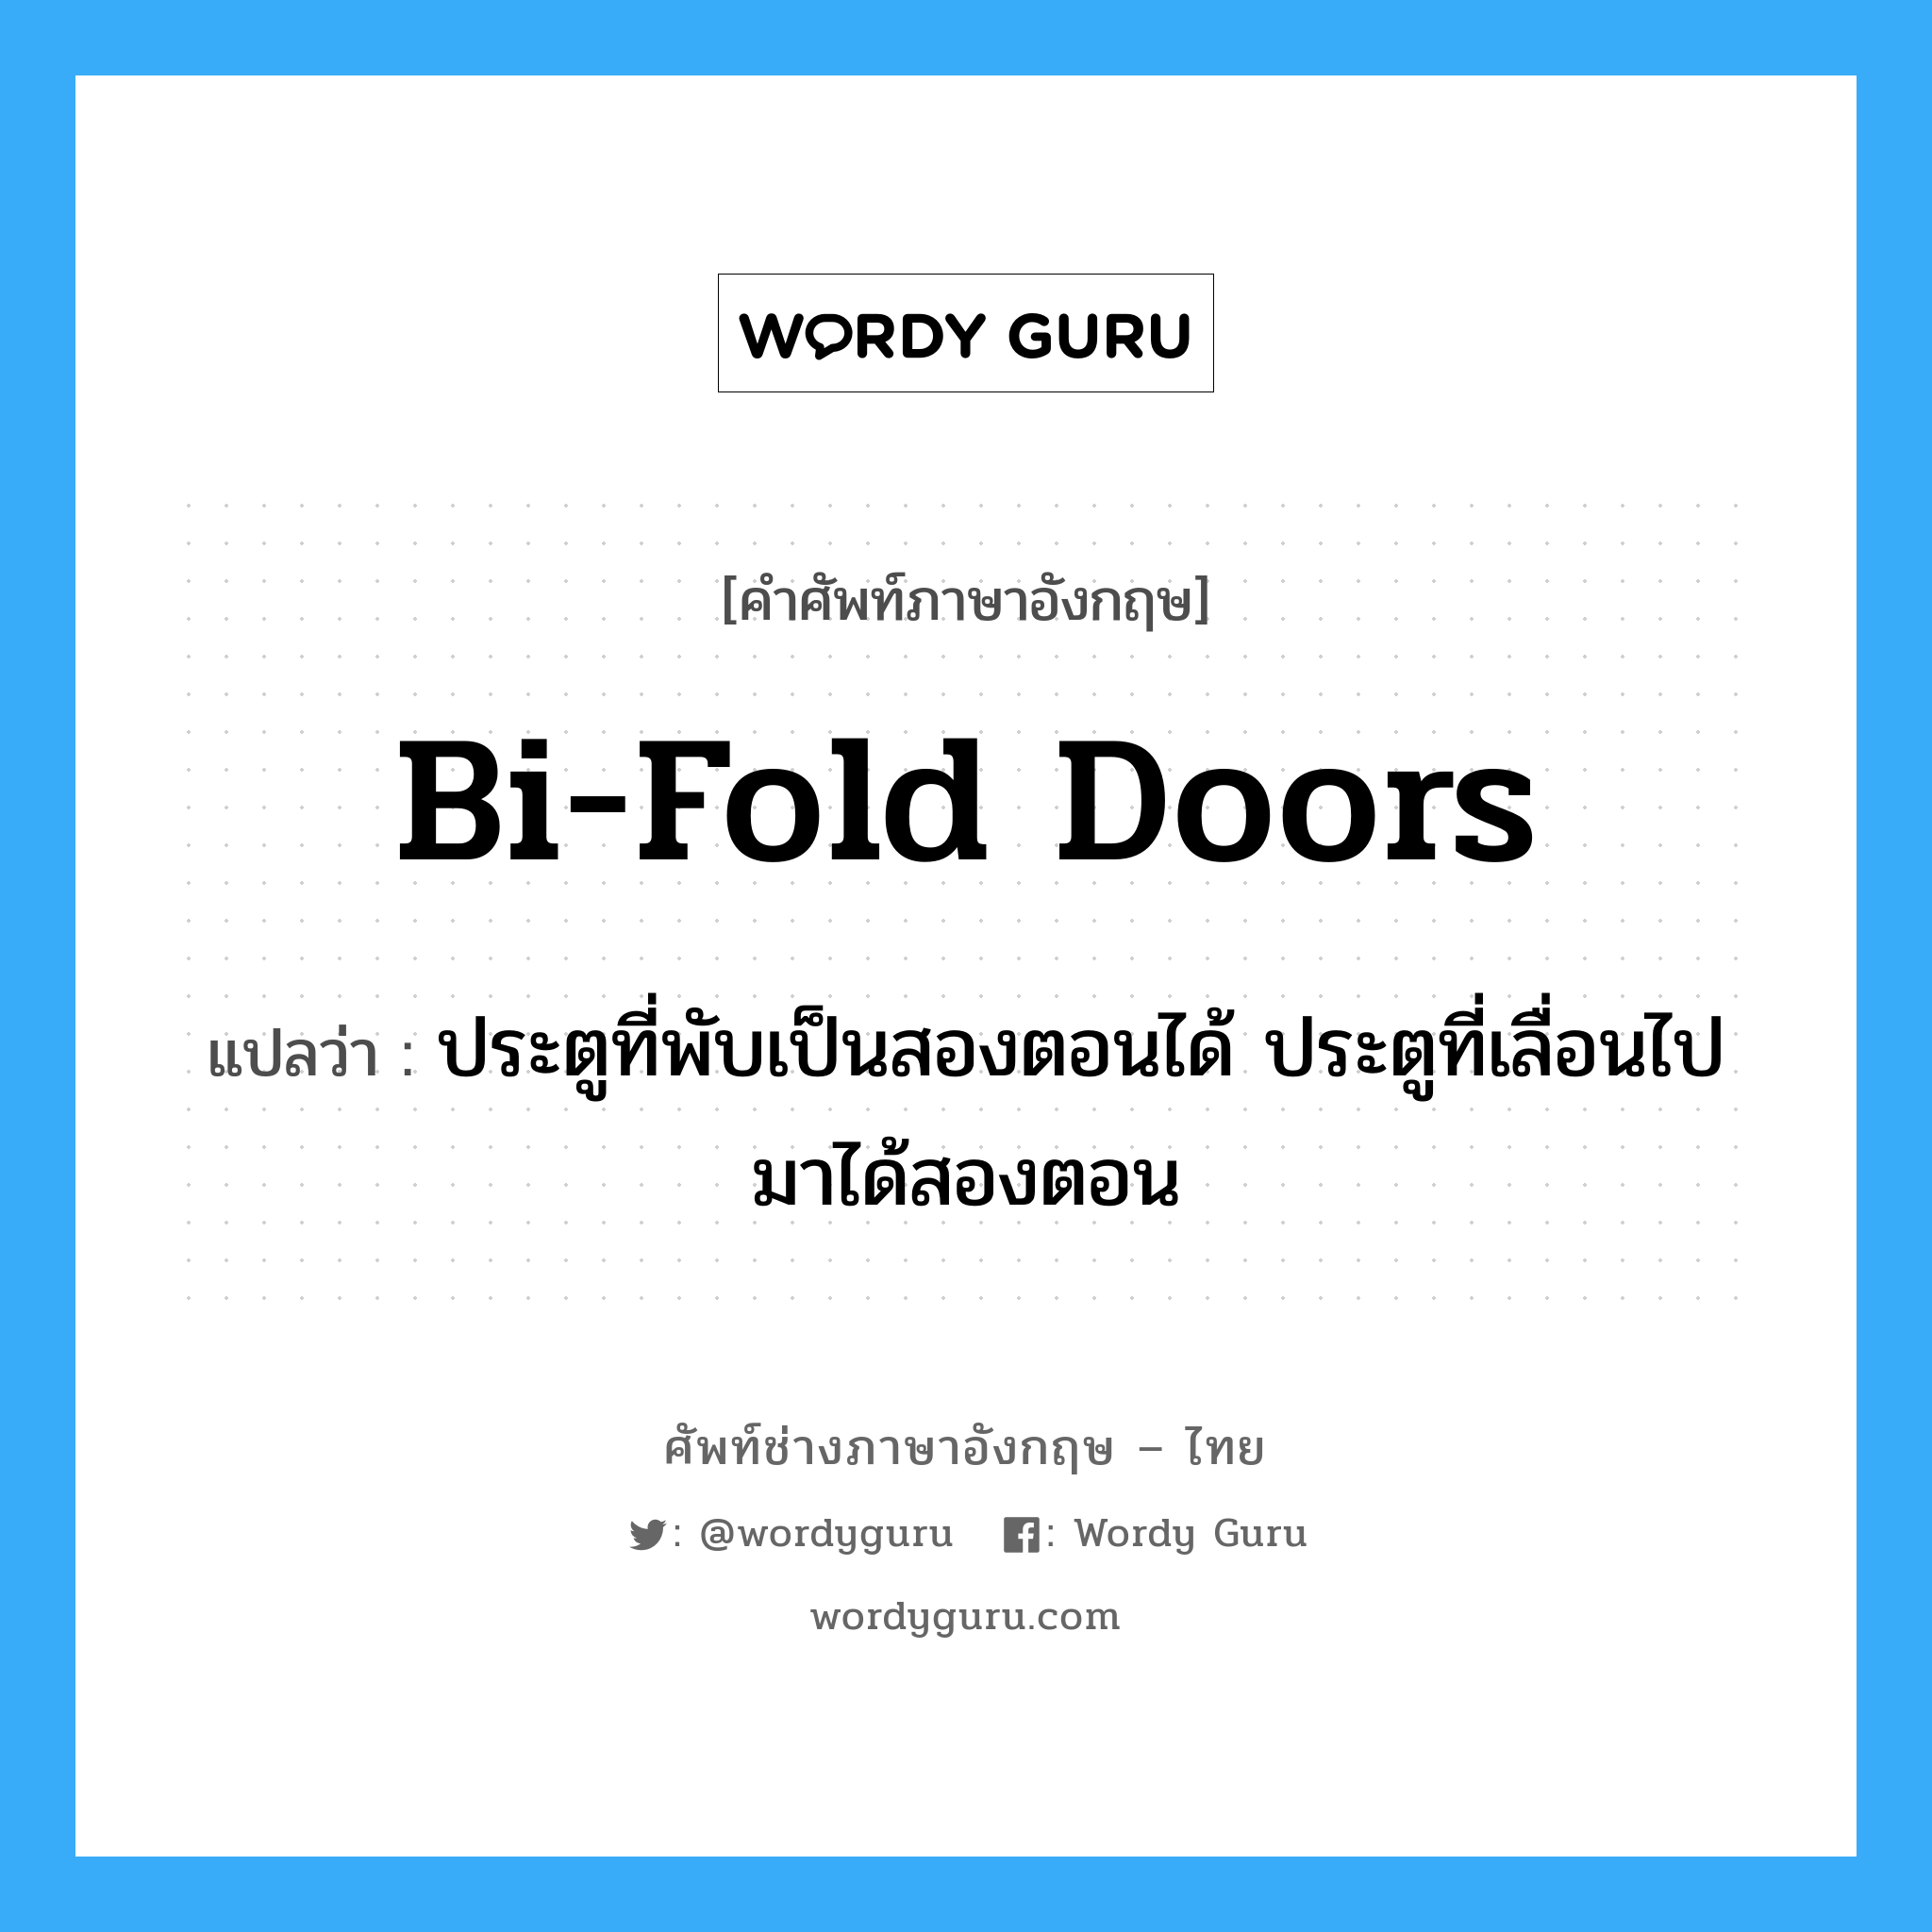 bi-fold doors แปลว่า?, คำศัพท์ช่างภาษาอังกฤษ - ไทย bi-fold doors คำศัพท์ภาษาอังกฤษ bi-fold doors แปลว่า ประตูที่พับเป็นสองตอนได้ ประตูที่เลื่อนไปมาได้สองตอน